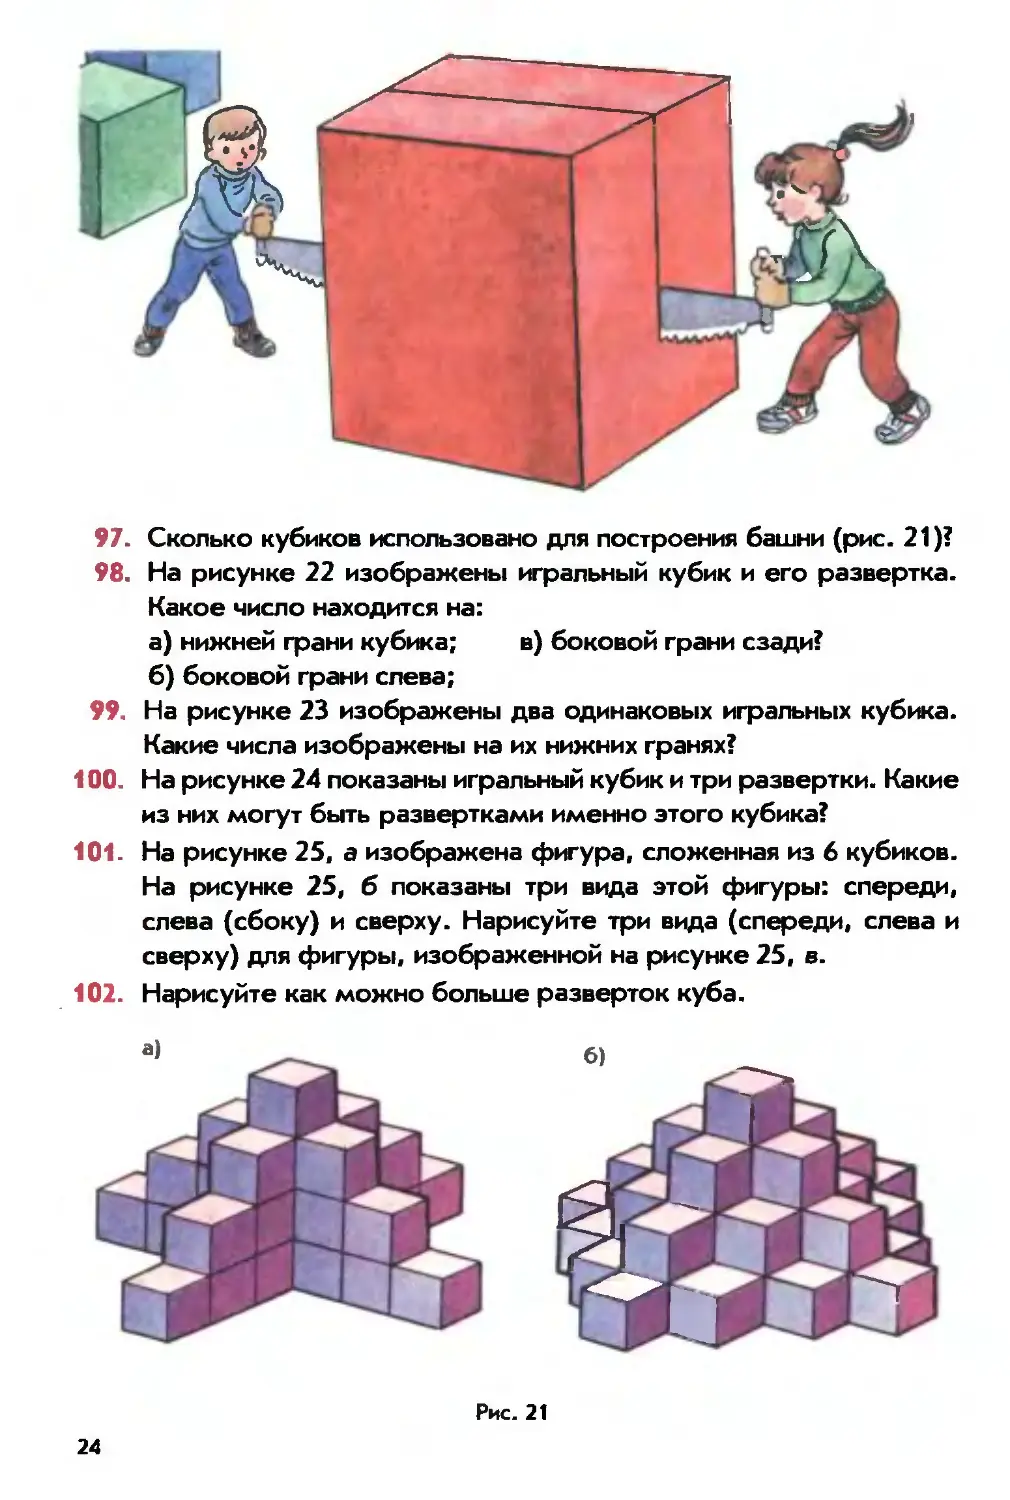 Сколько кубиков использовано для построения башни